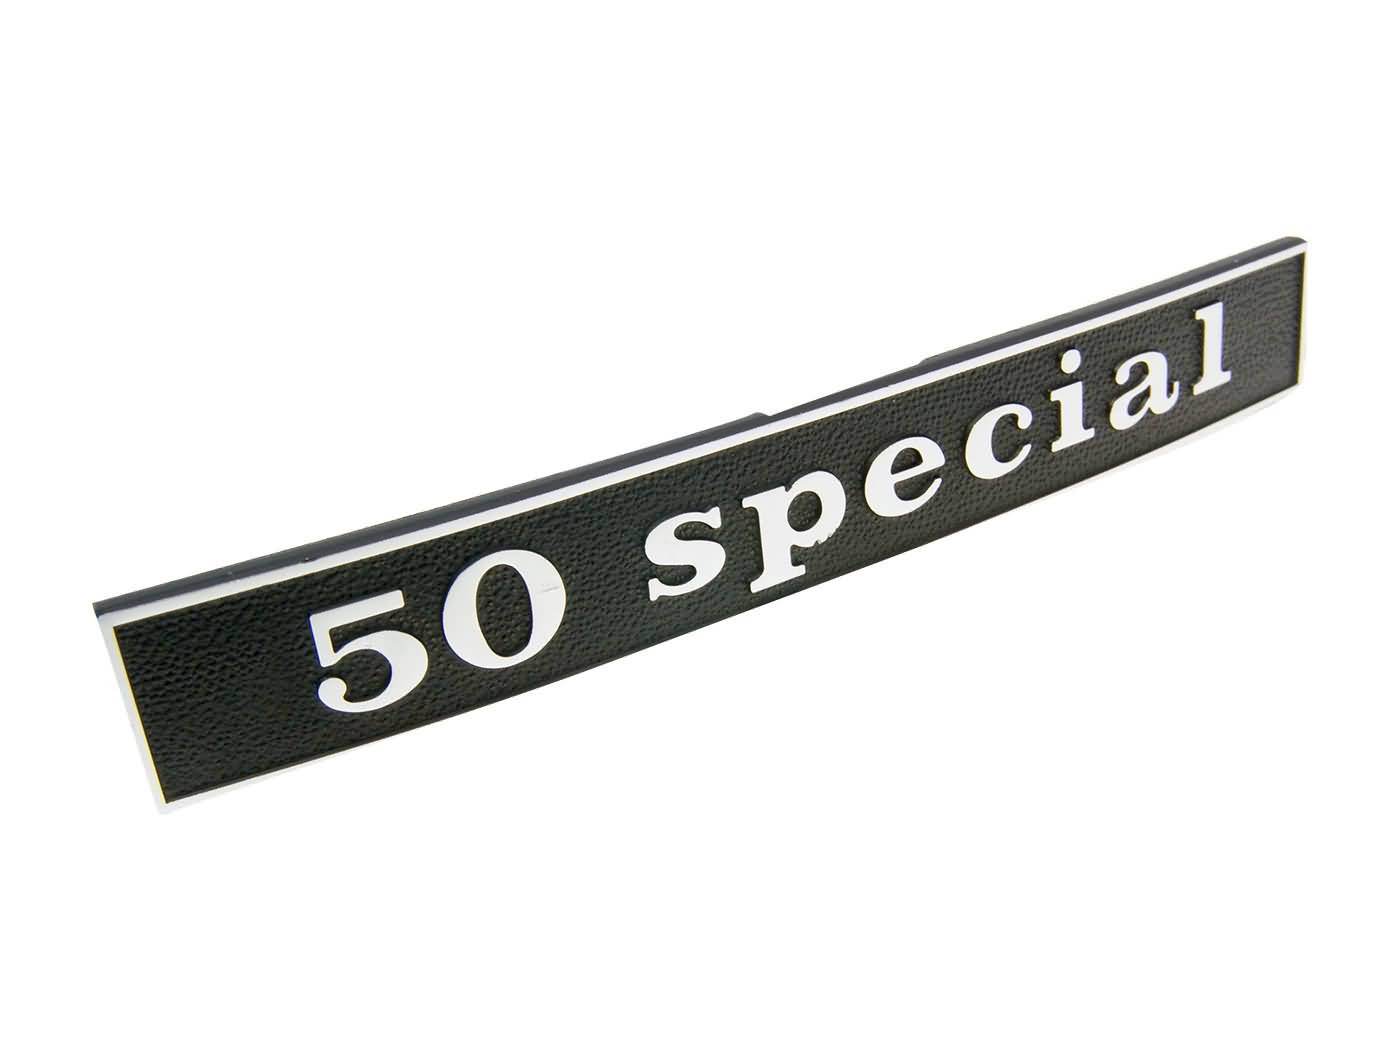 50 special felirat - Vespa 50 Special